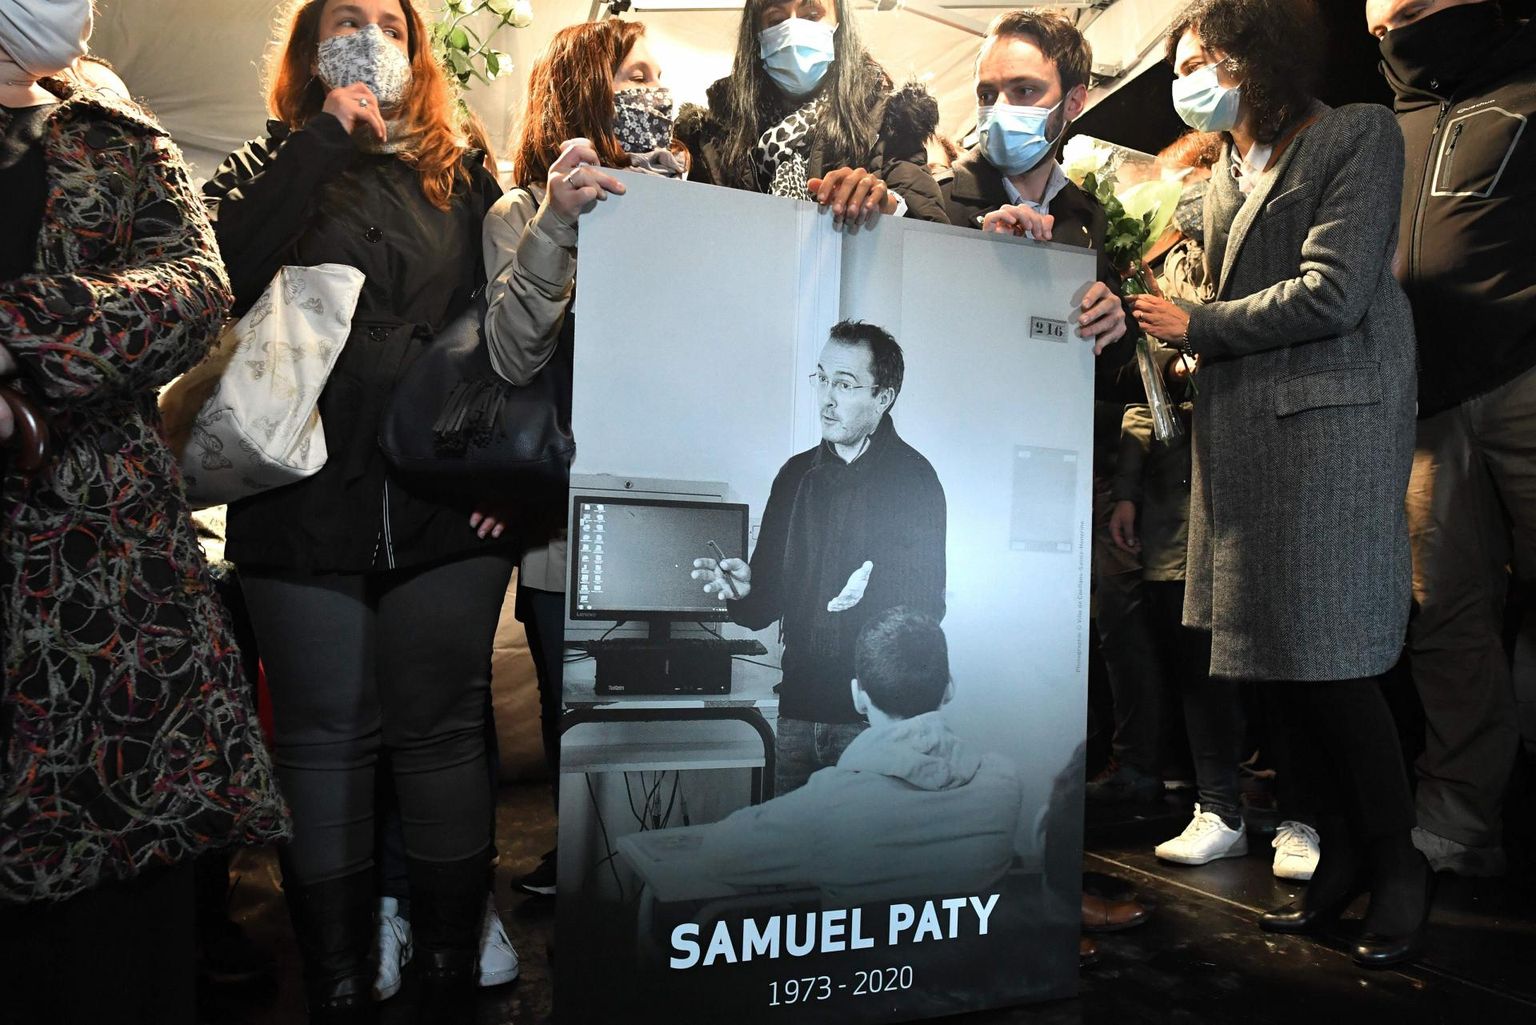 Sugulased ja kolleegid tapetud Samuel Paty pildiga Conflans-Sainte-Honorine’is sel teispäeval. 